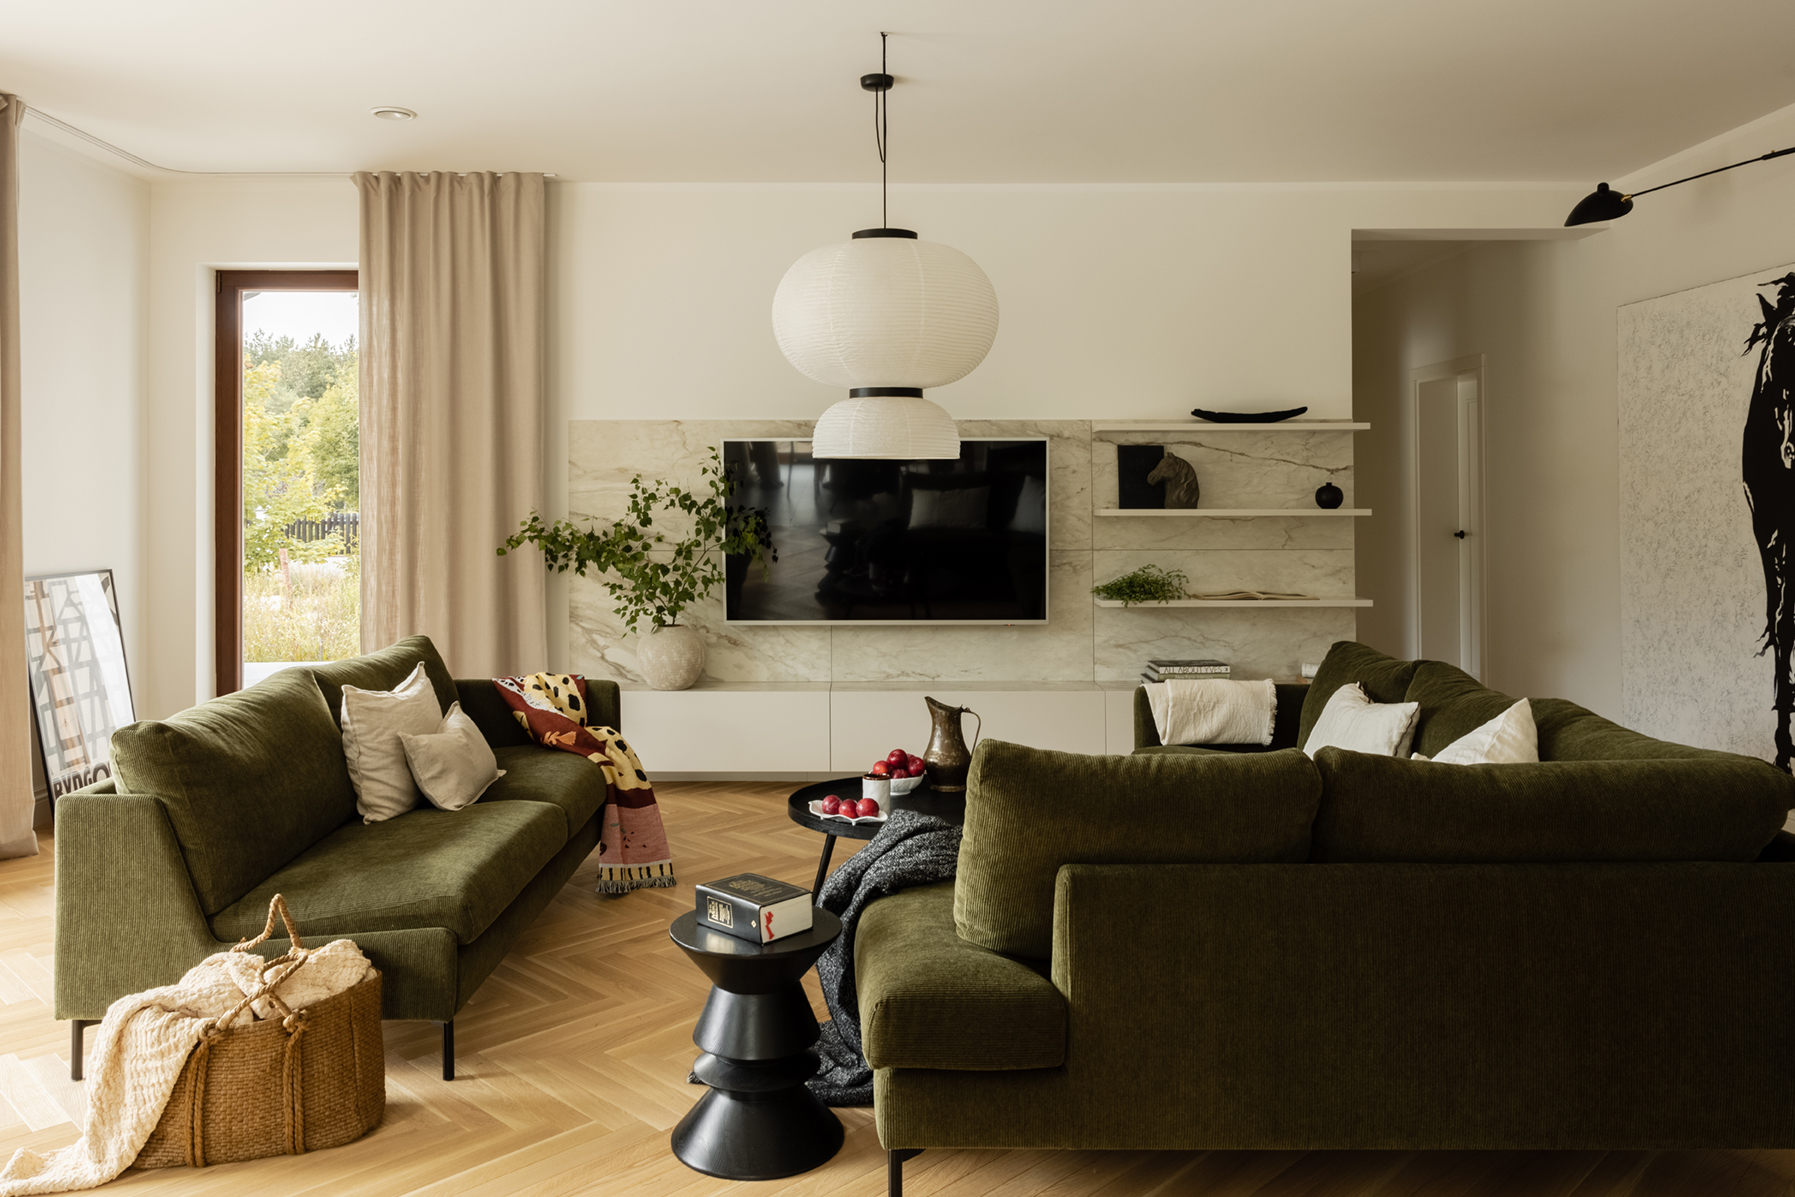 Lampa, telewizor i kanapy w salonie